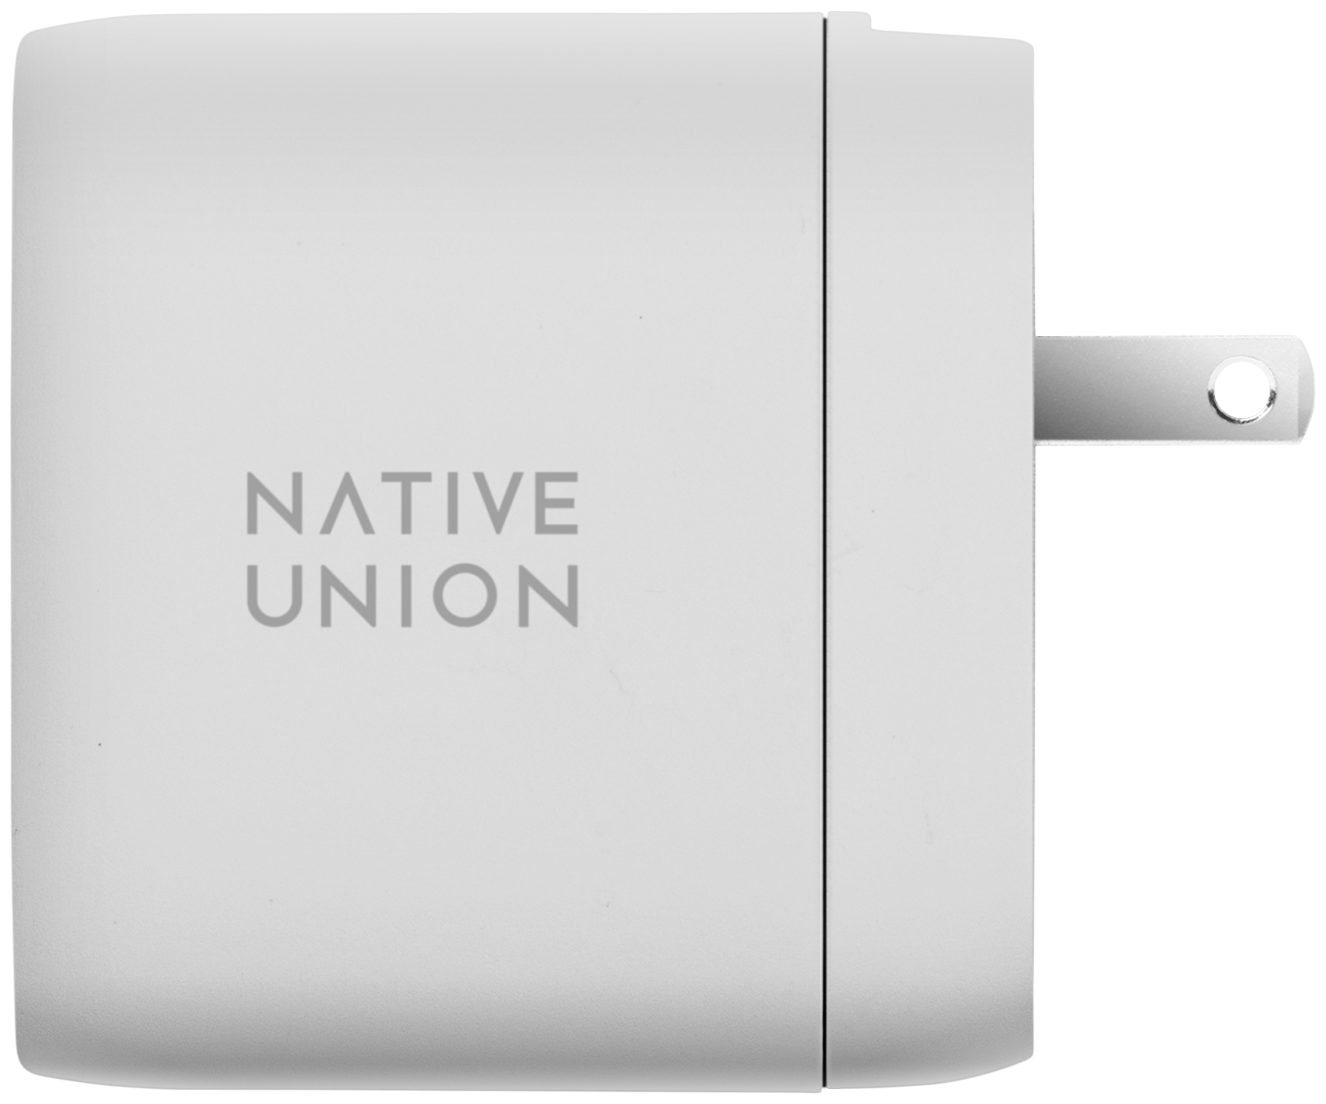 Сетевое зарядное устройство Native Union - фото №3